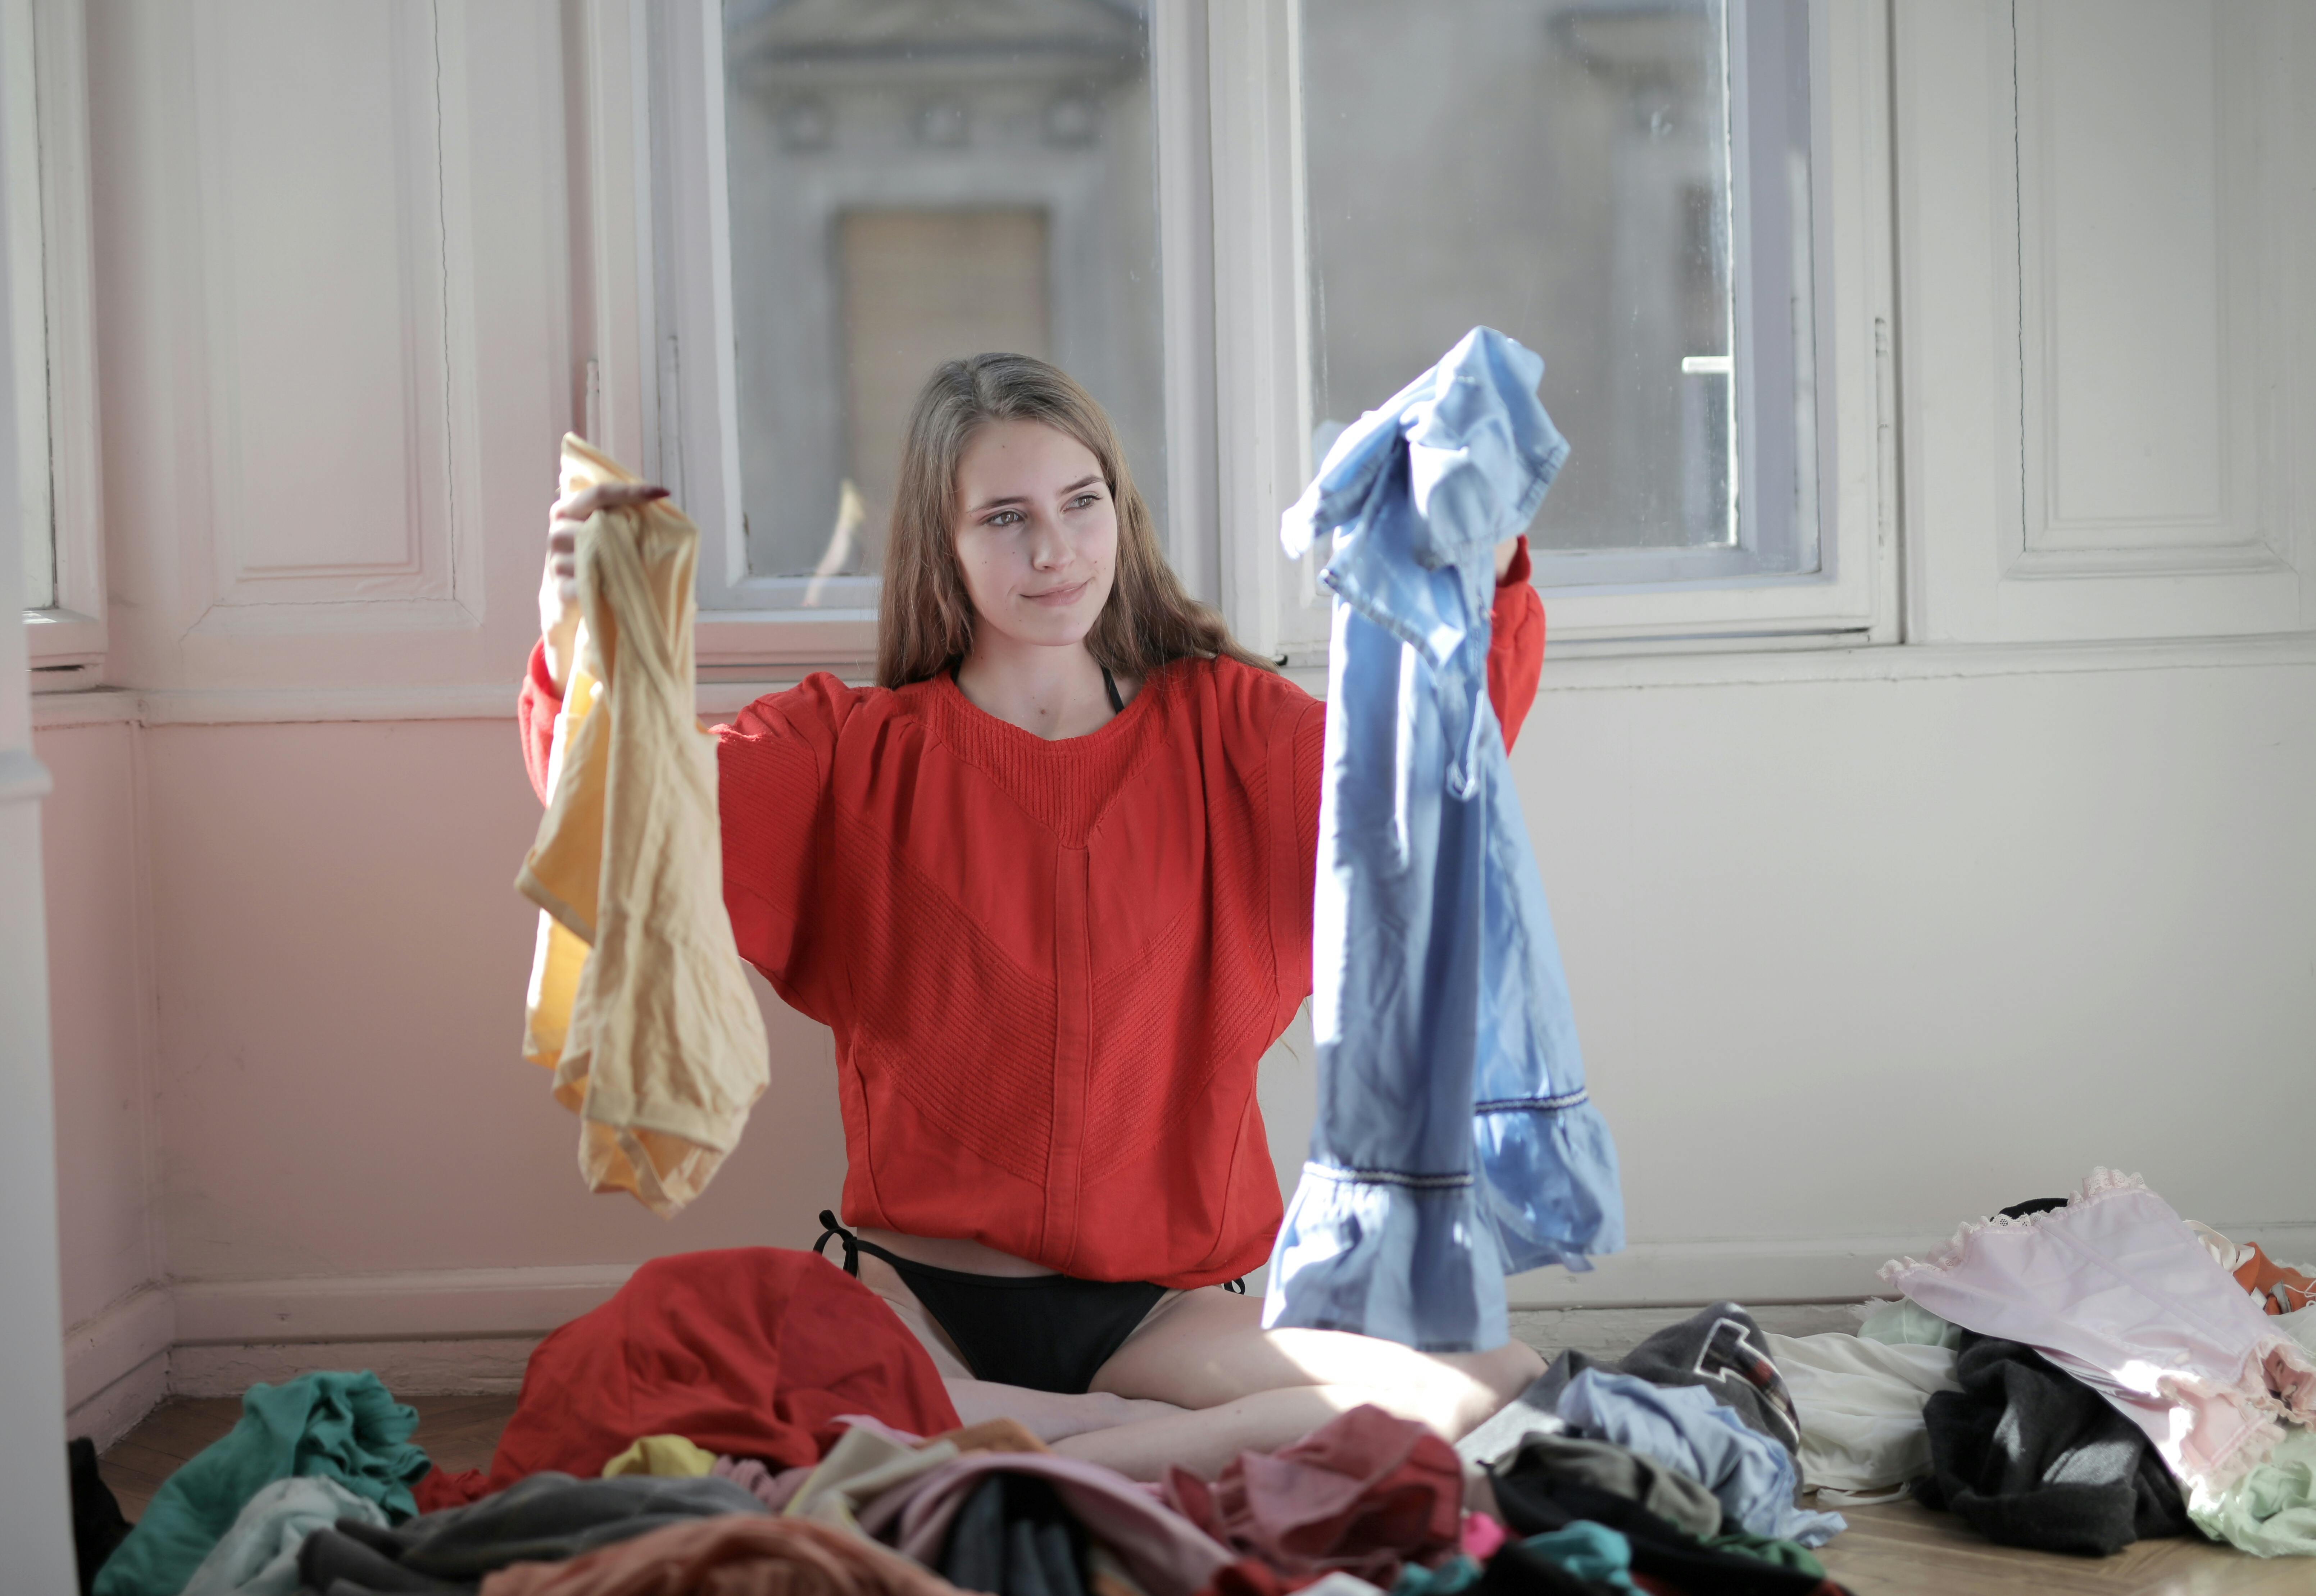 Frau hält Kleidungsstücke aus der Wäscherei hoch | Quelle: Pexels